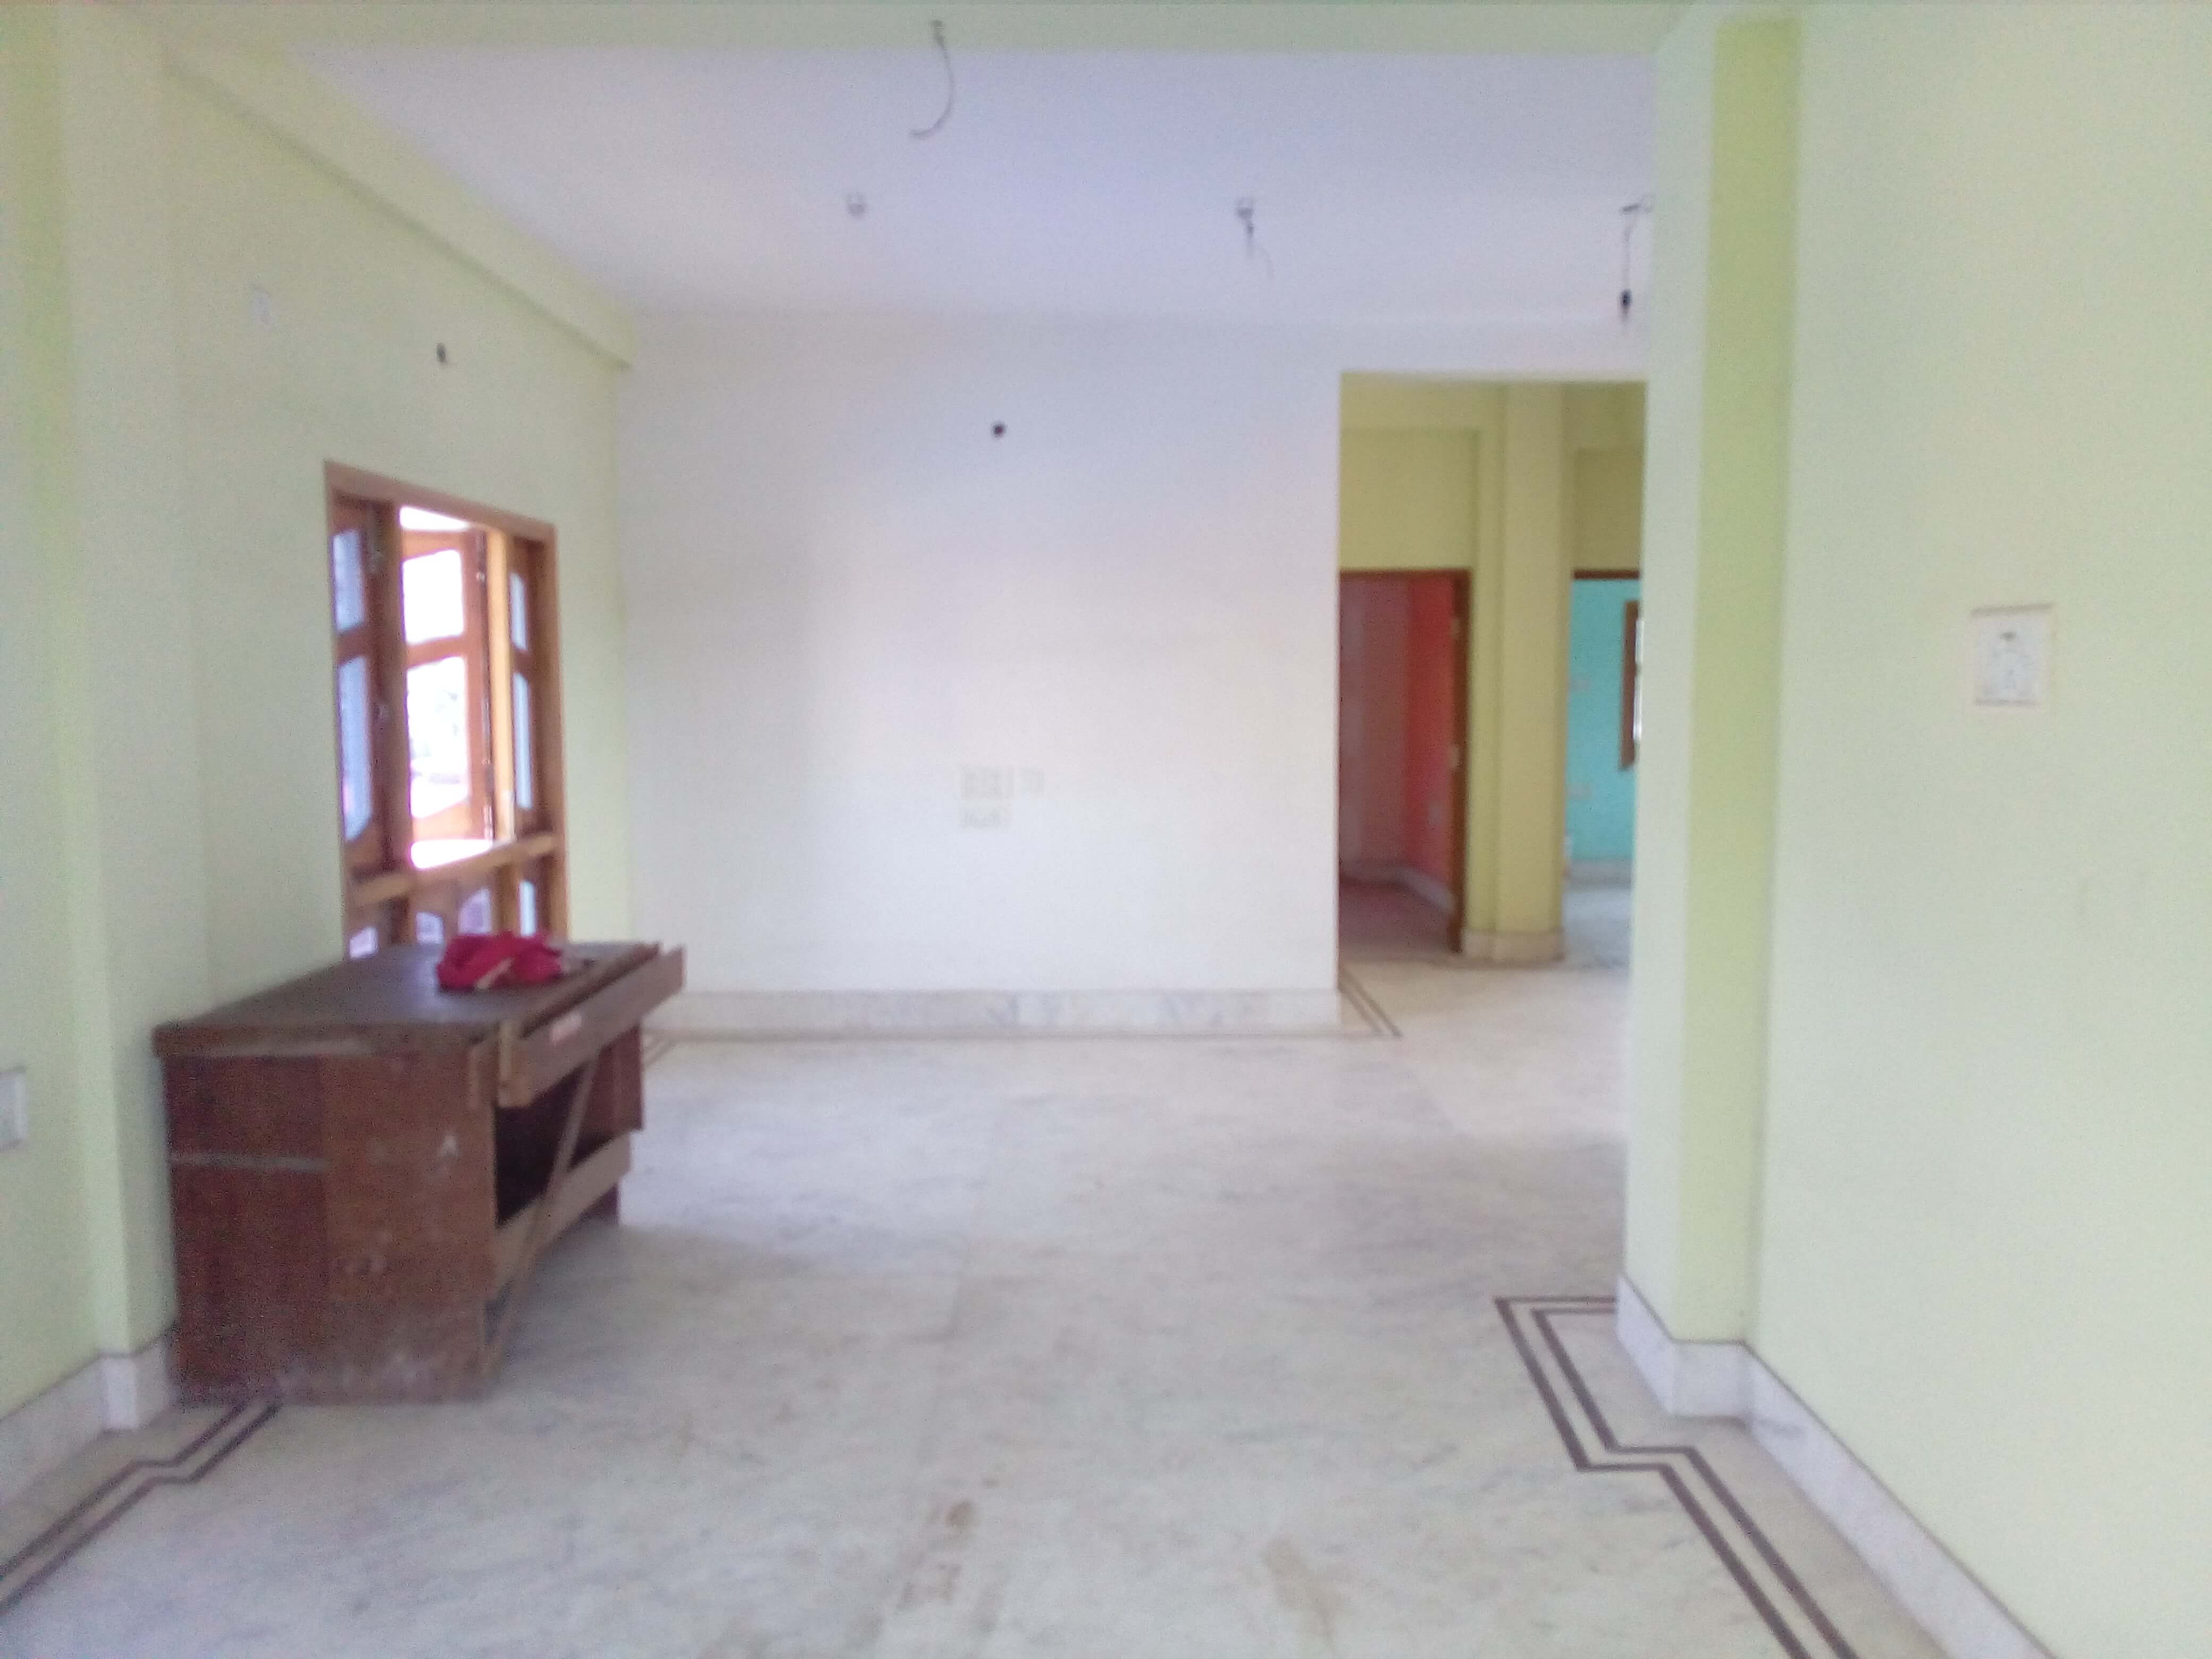 Flat For Rent in Santoshpur Kolkata (Id: 12629)